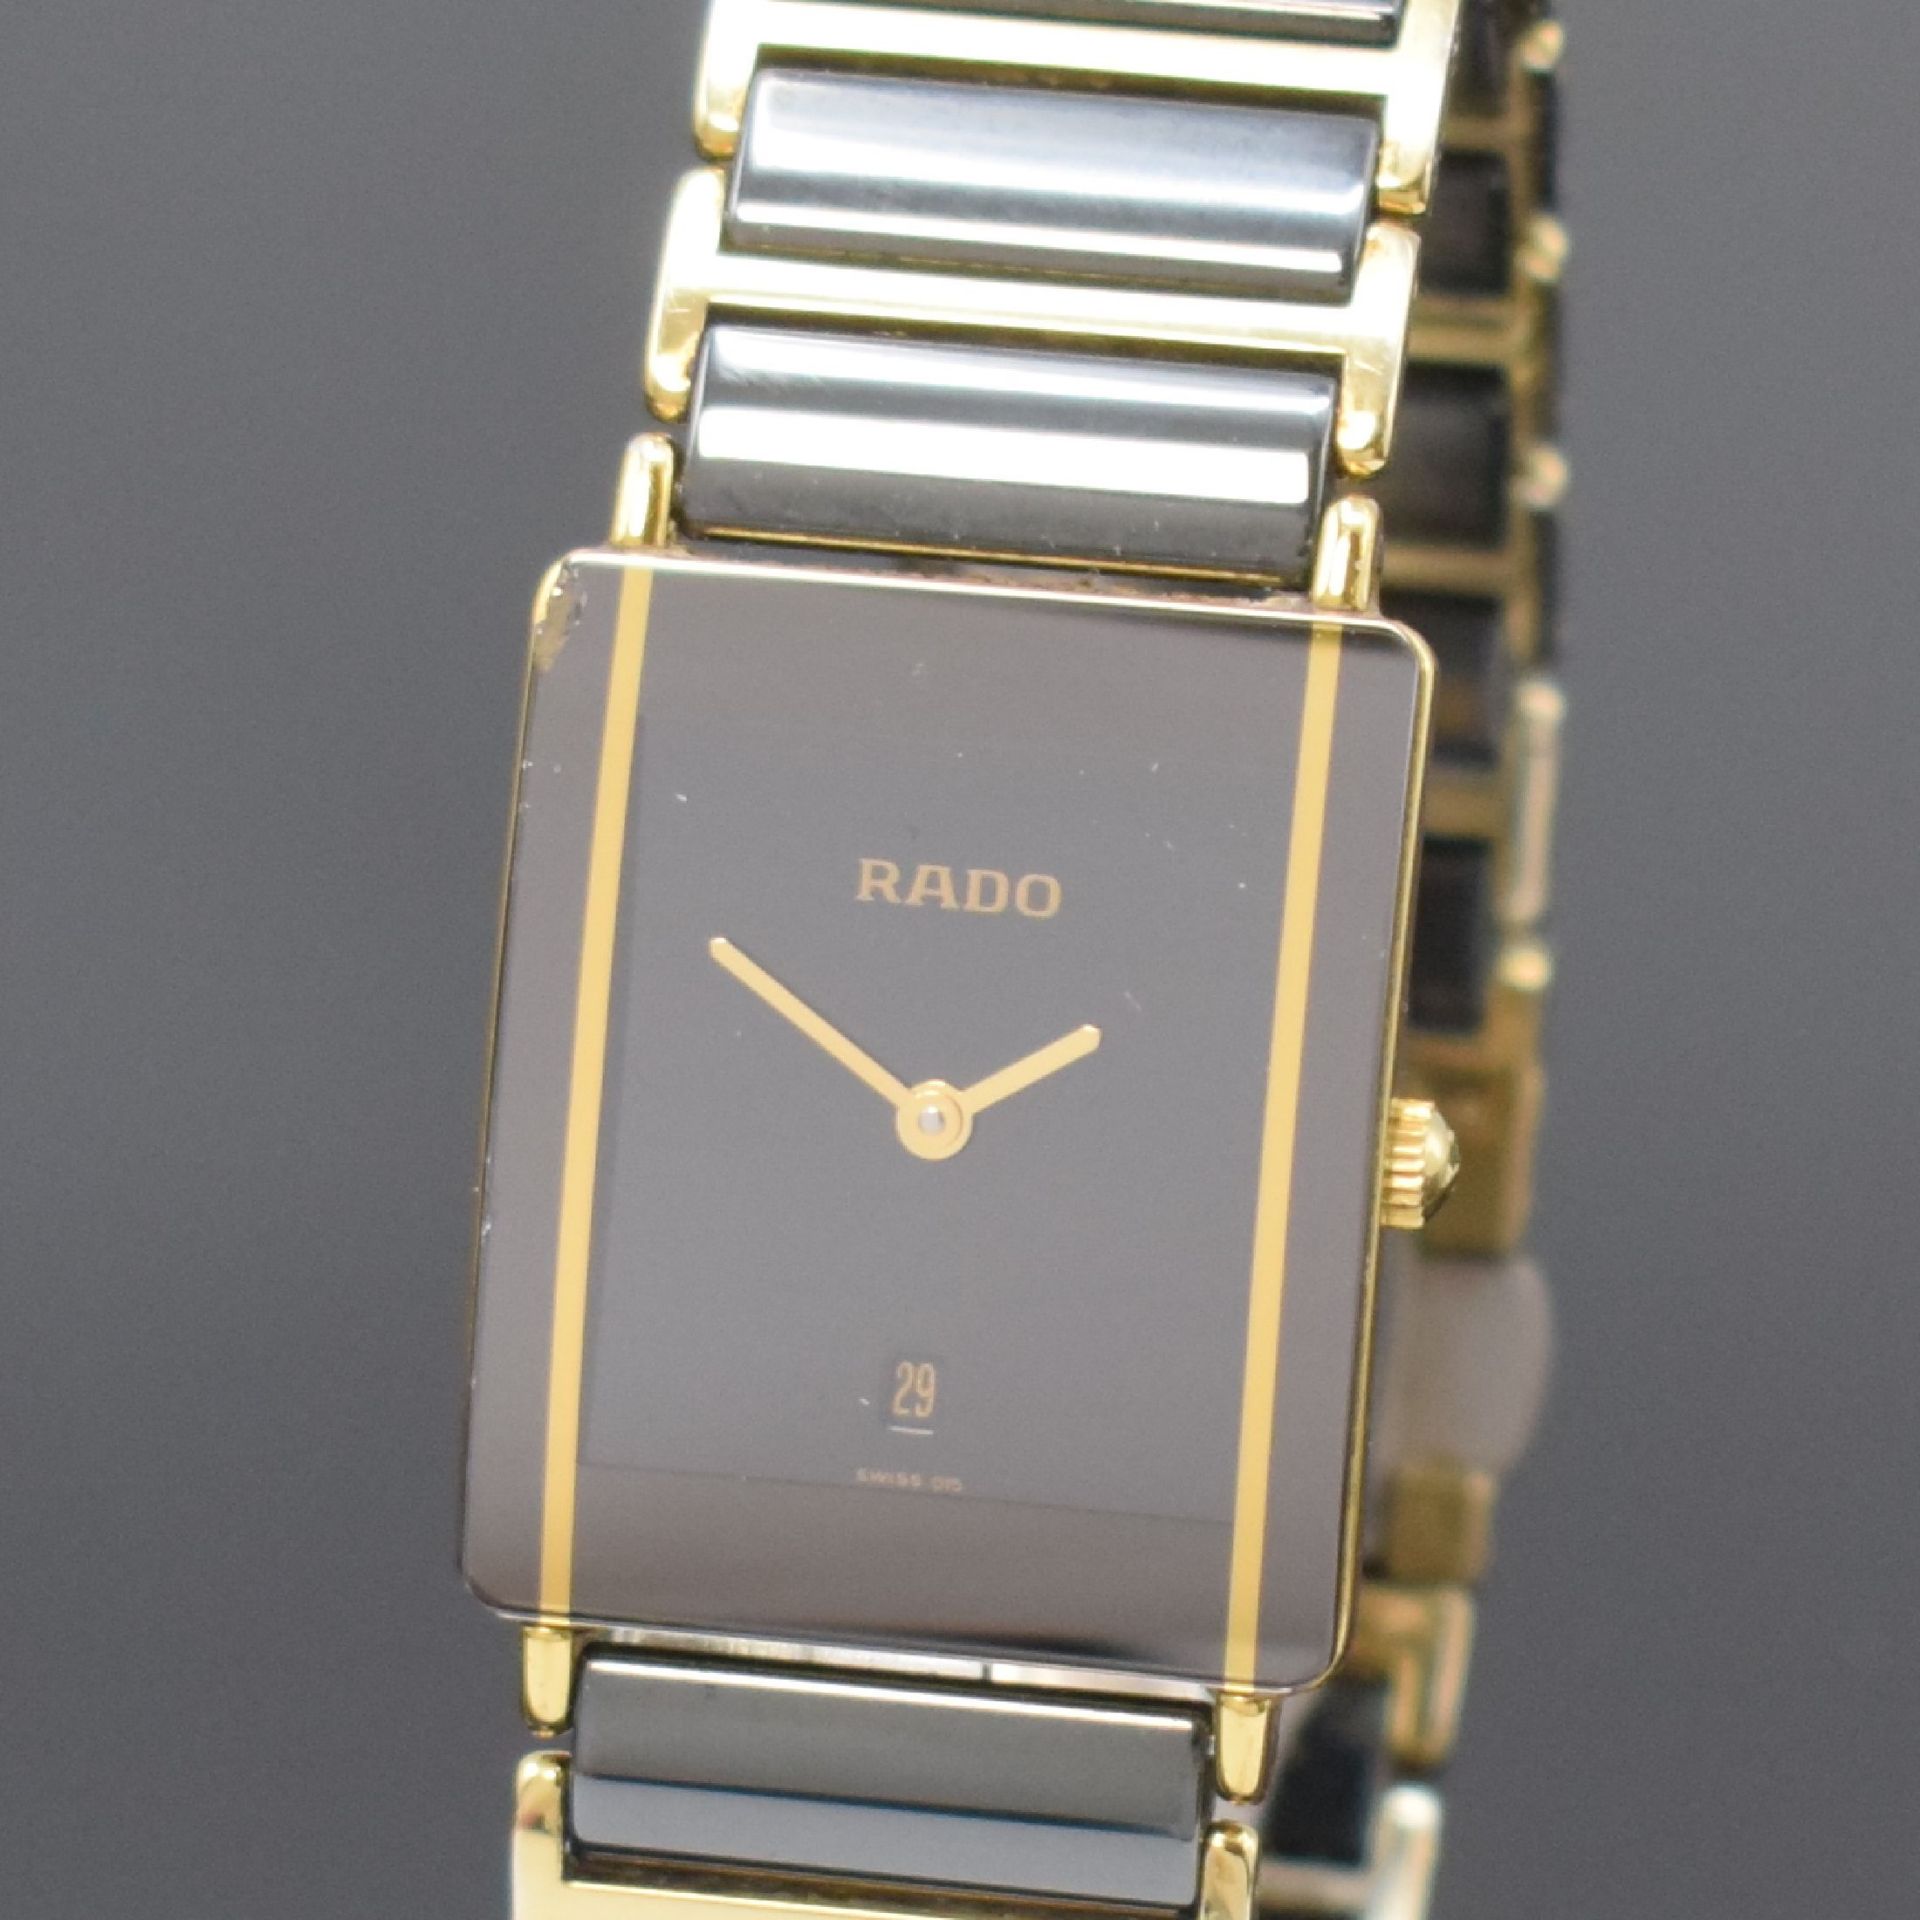 RADO Diastar Armbanduhr Referenz 160.0381.3, Schweiz um - Bild 2 aus 5